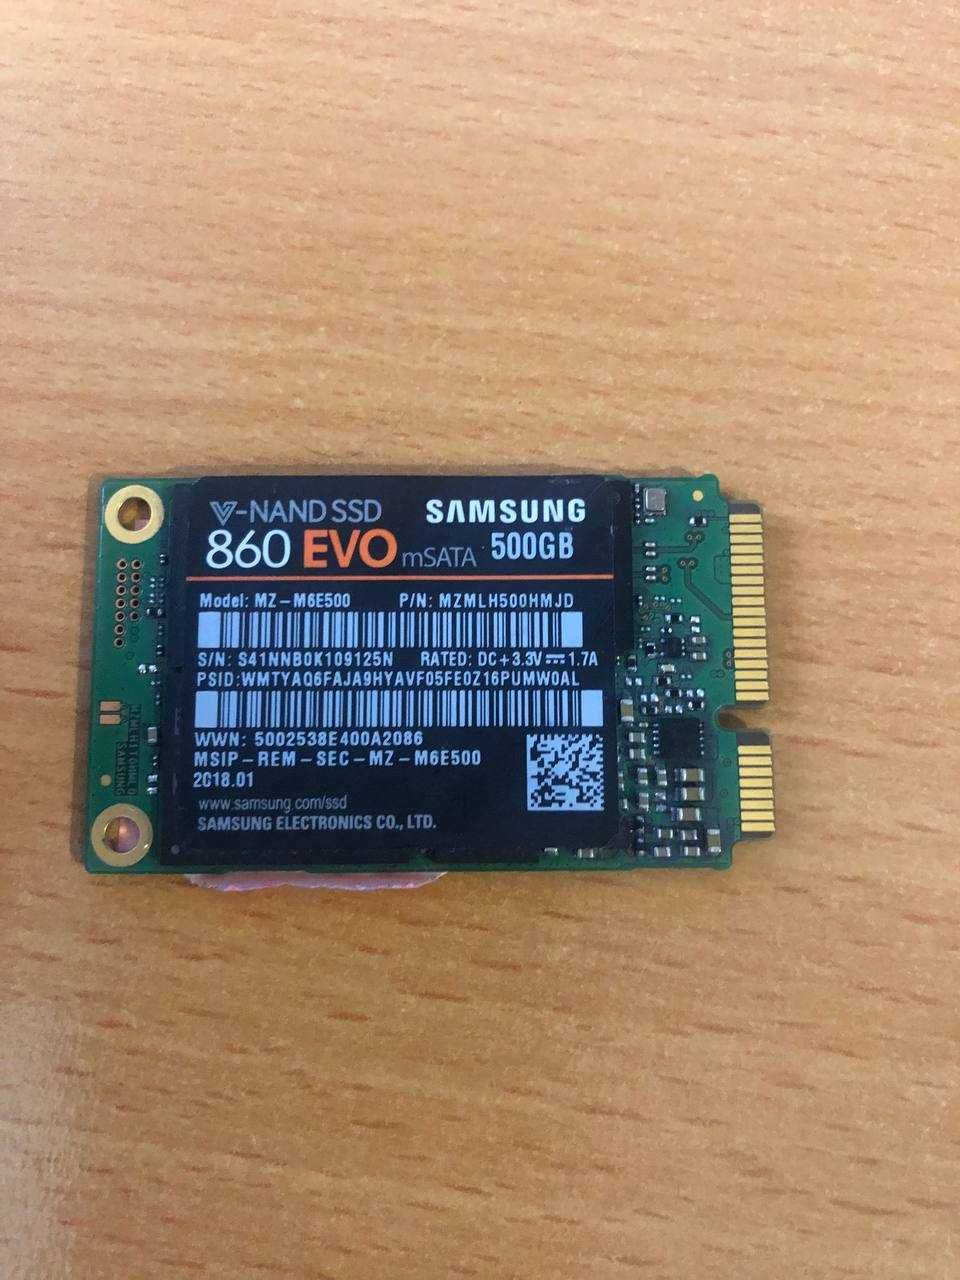 Samsung 860 Evo mSata 500gb